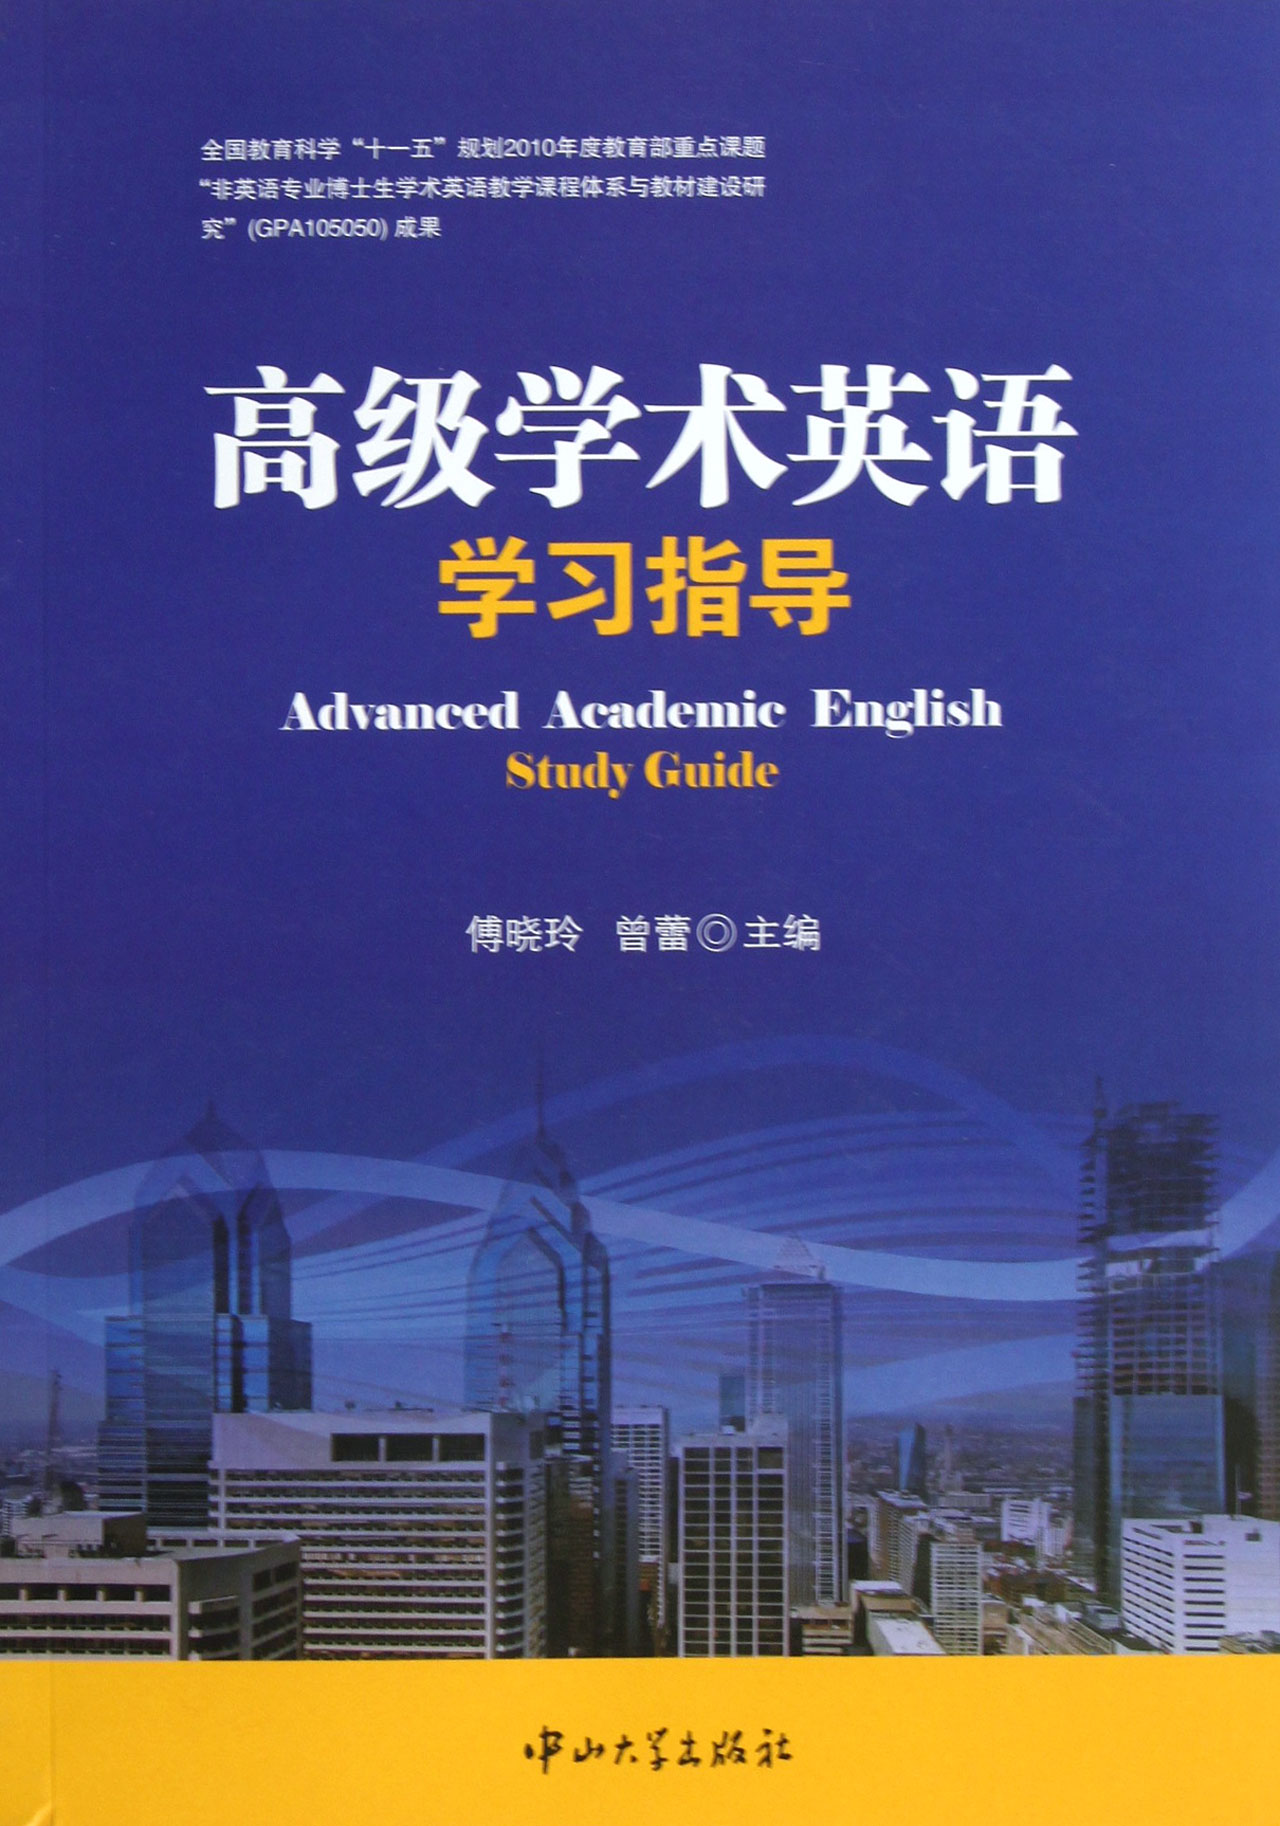 高级学术英语学习指导 \/傅晓玲\/\/曾蕾-图书杂志